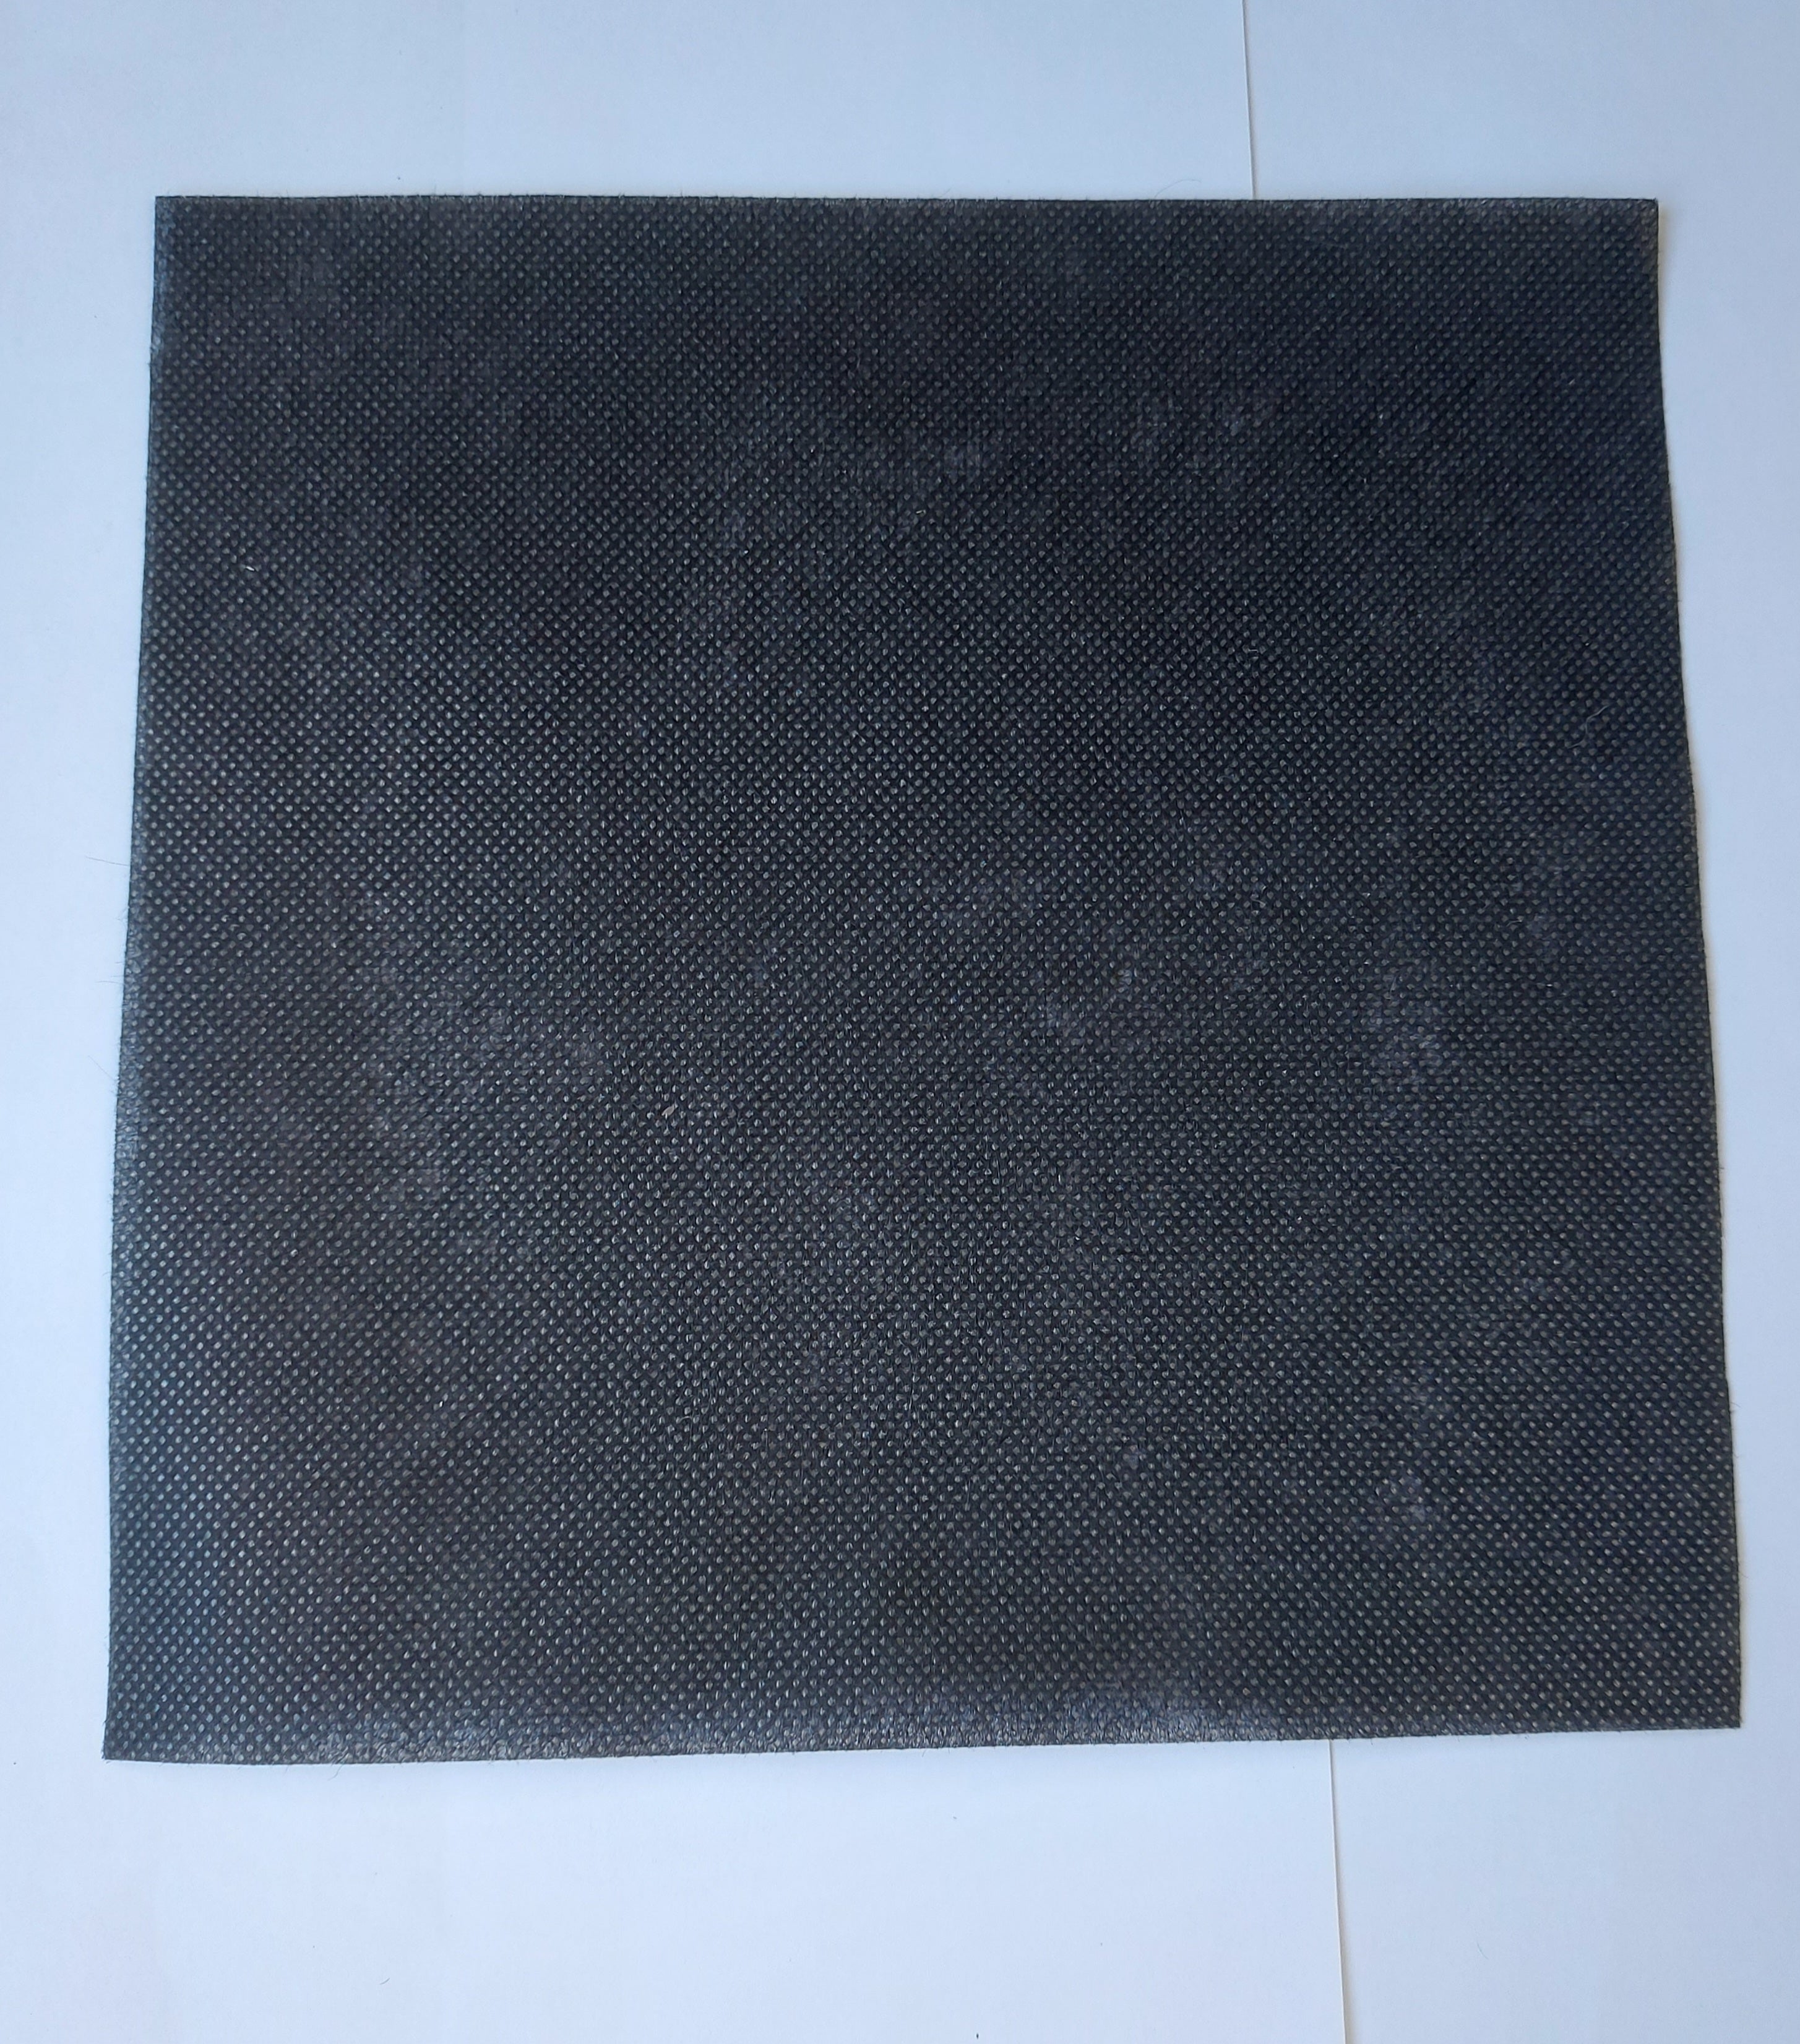 Autopot Black Matrix Disc